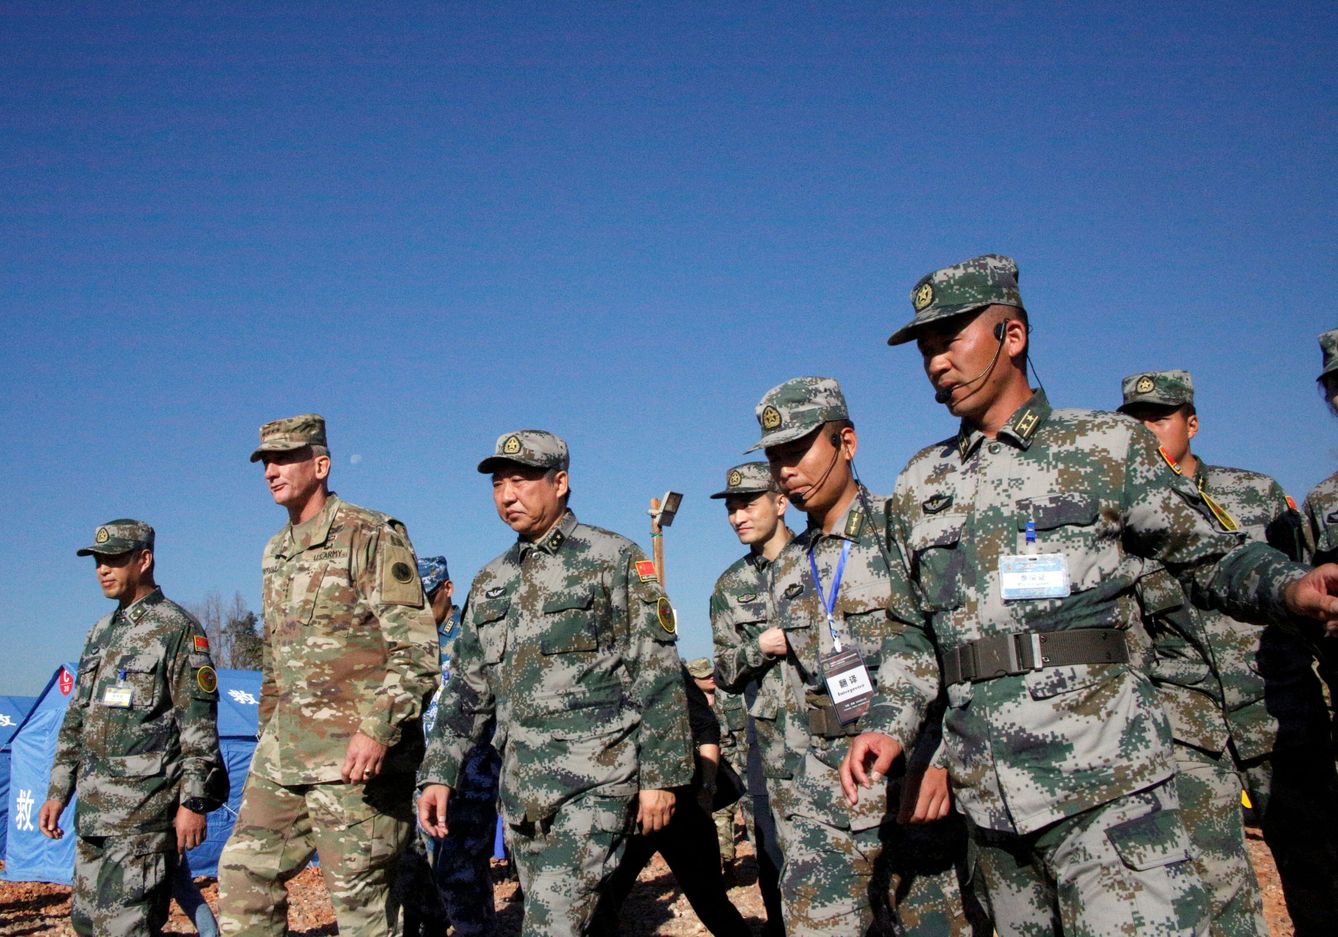 El general Robert Brown, comandante del Ejército del Pacífico de las fuerzas armadas de EEUU, y el comandante de la región sur de China, Liu Xiaowu, en un ejercicio militar humanitario conjunton en Kunming, Yunan, el 18 de noviembre de 2016 (Reuters)